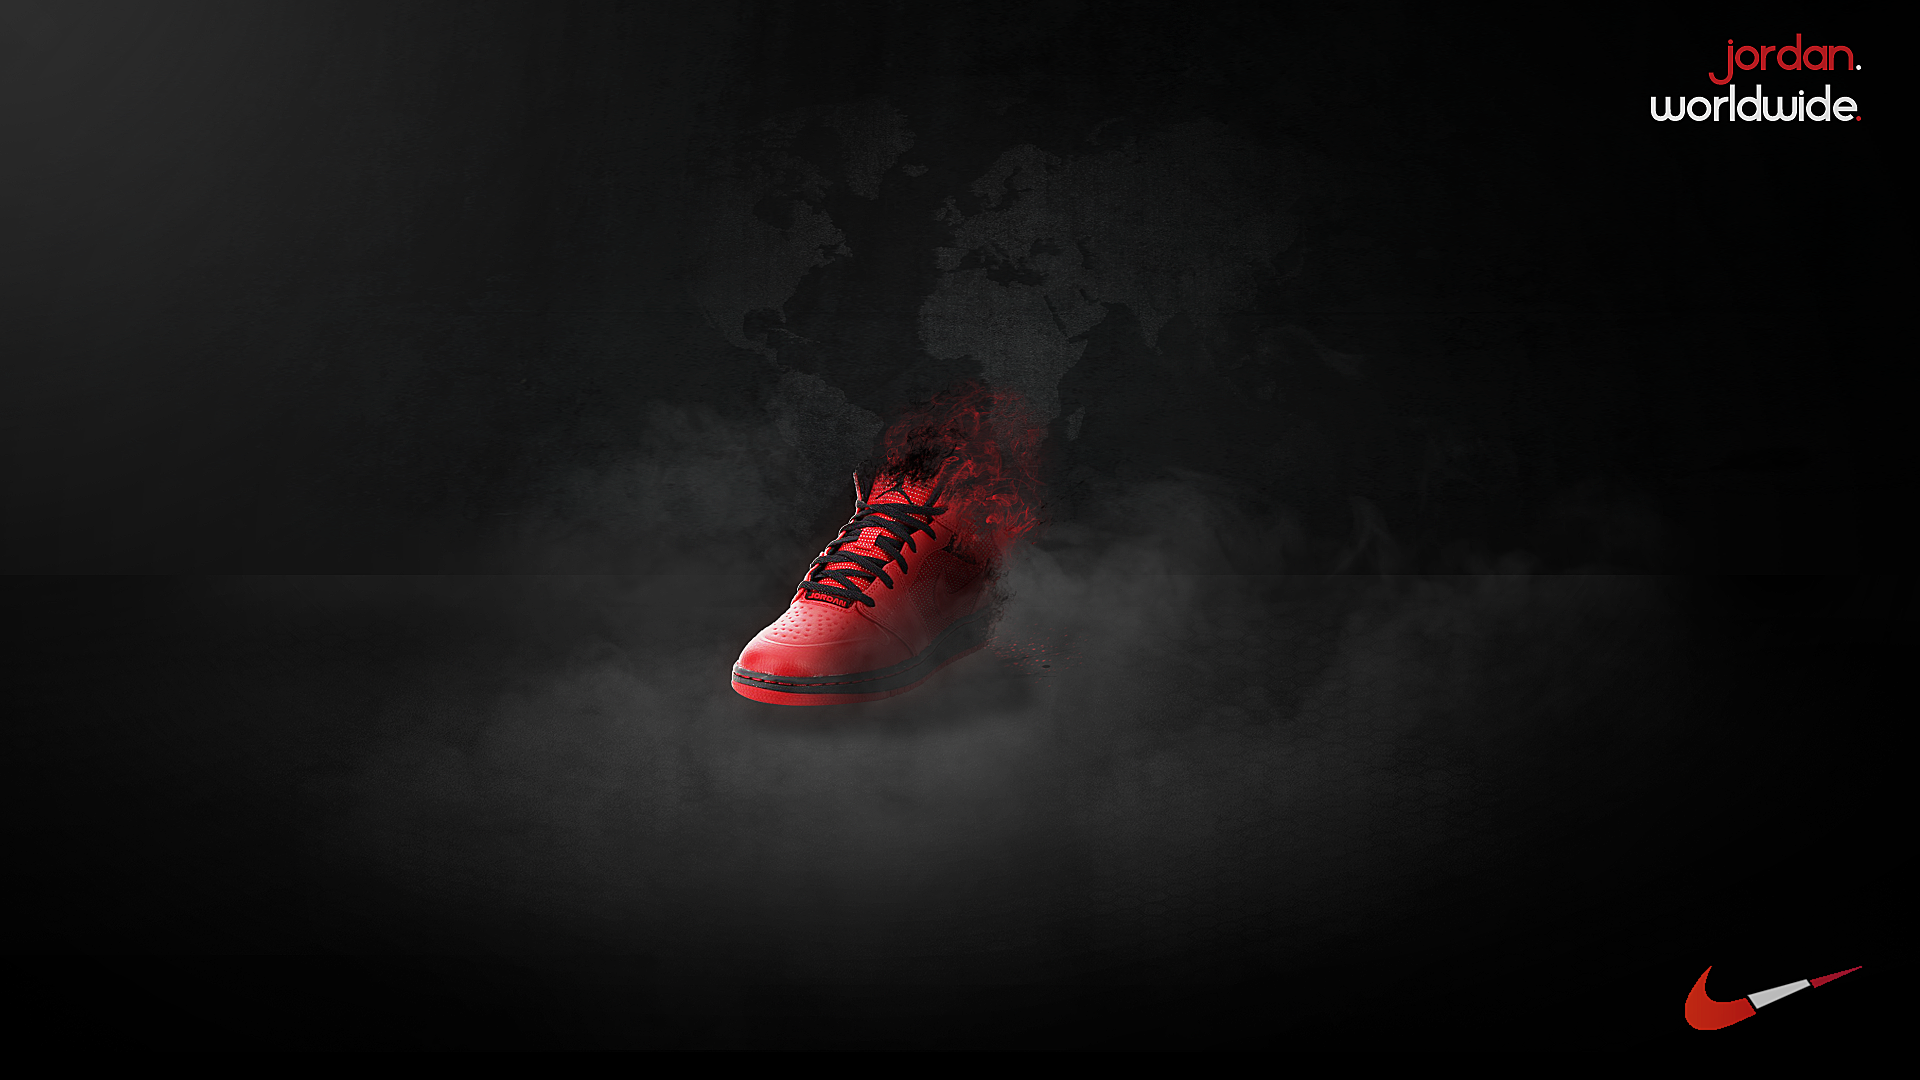 General 1920x1080 digital art shoes Nike Air Jordan brand